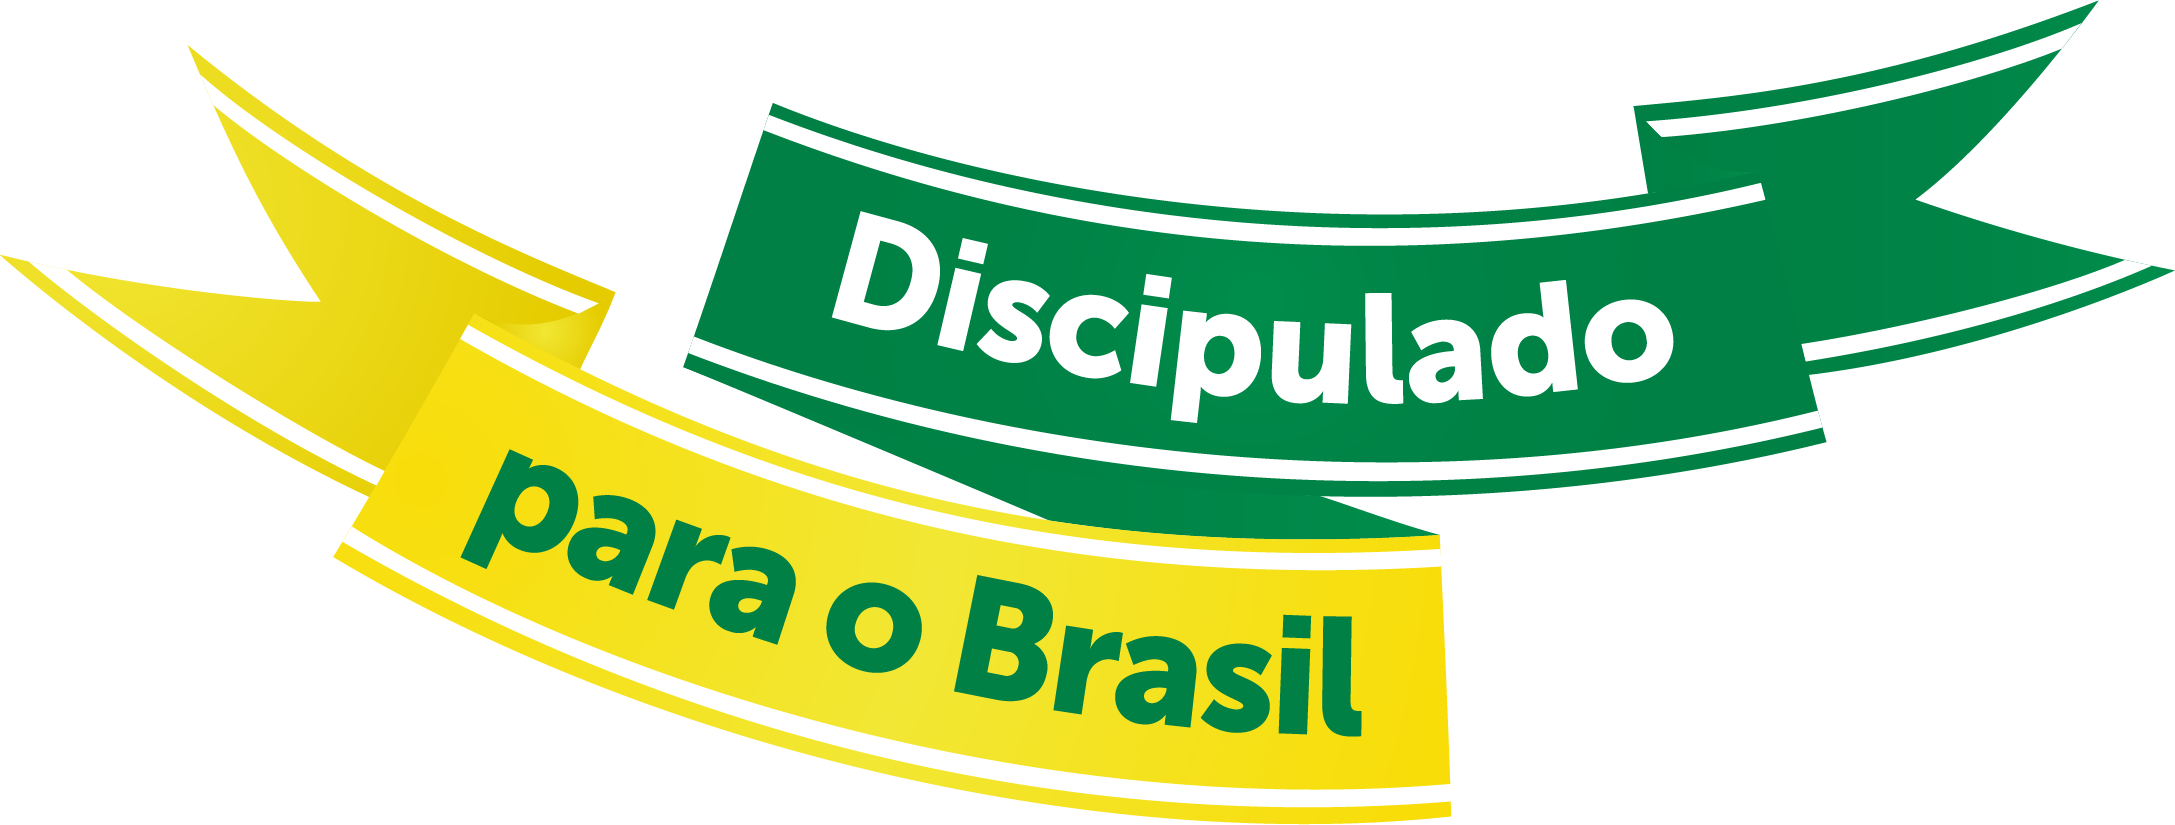 Discipulado Joinville Alcançando o Brasil